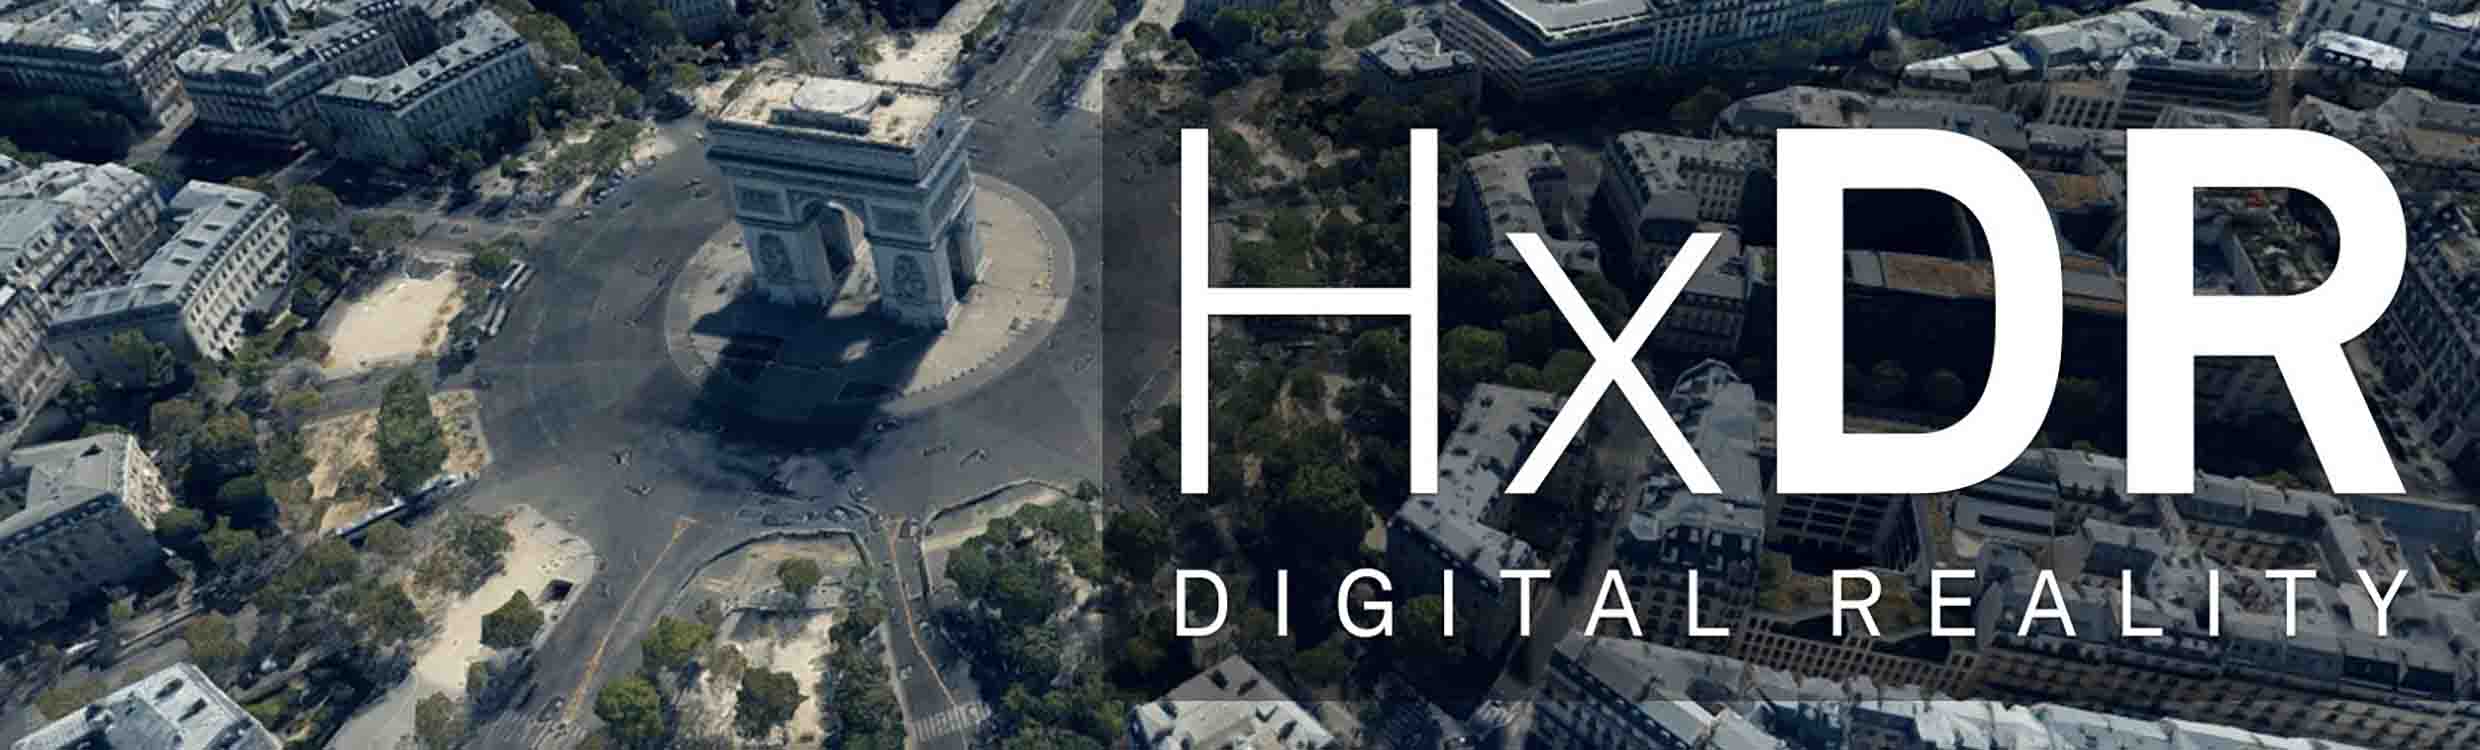 Vista aérea sobre o Arco do Triunfo em Paris, França, com o texto "HxDR Digital Reality"